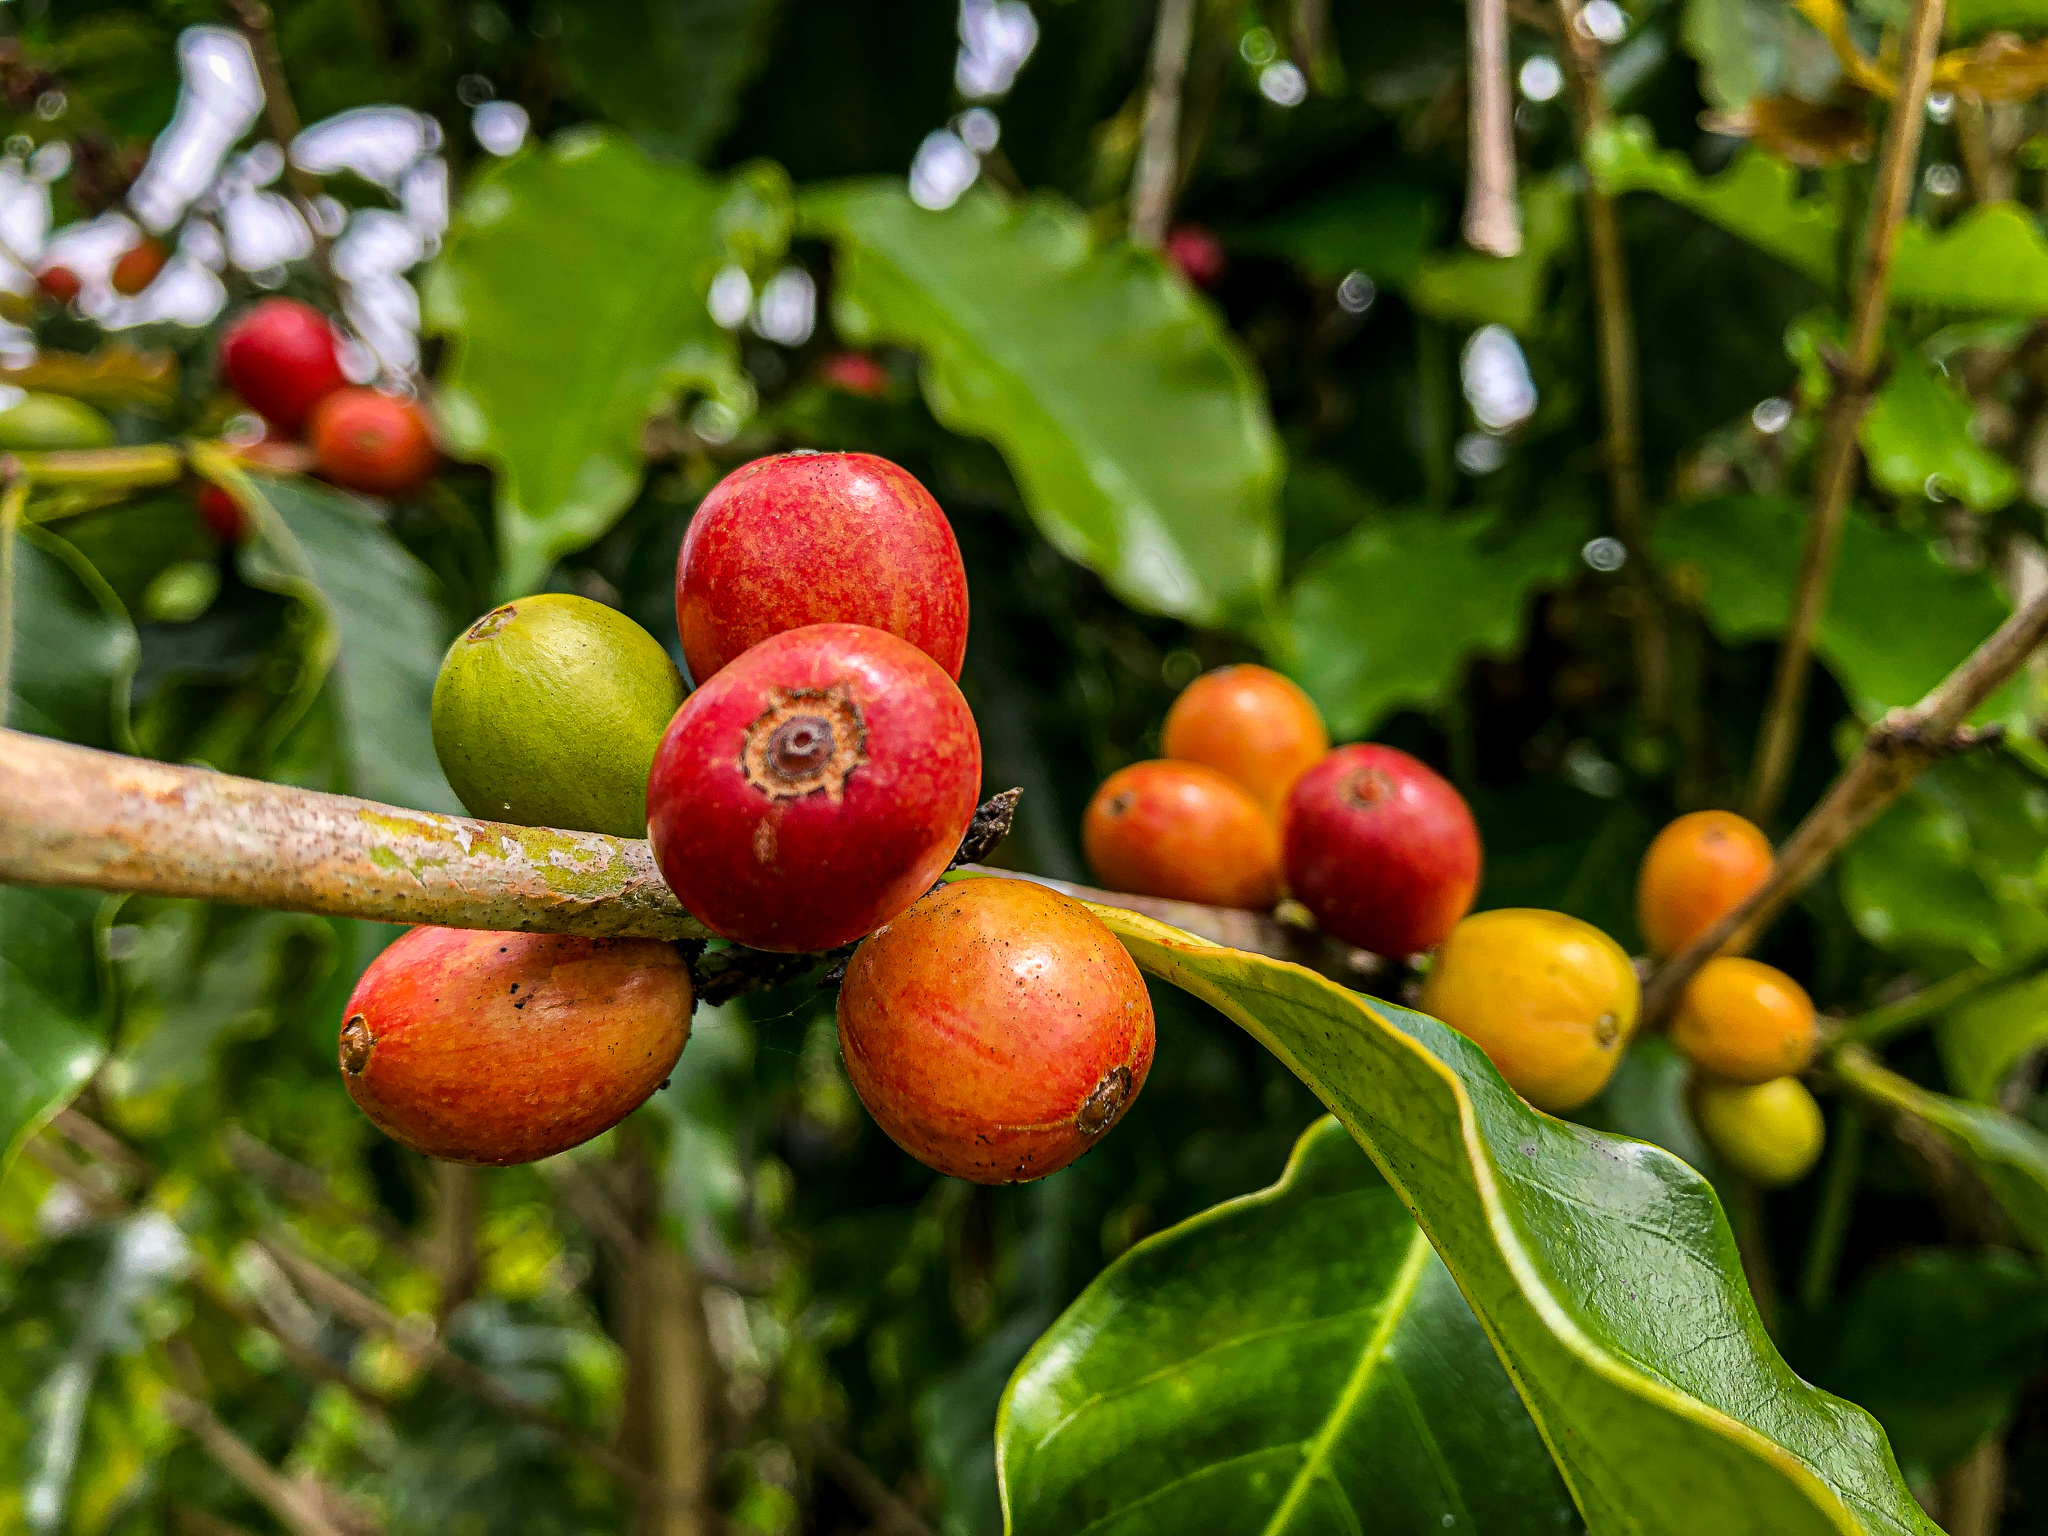 Kona coffee plant